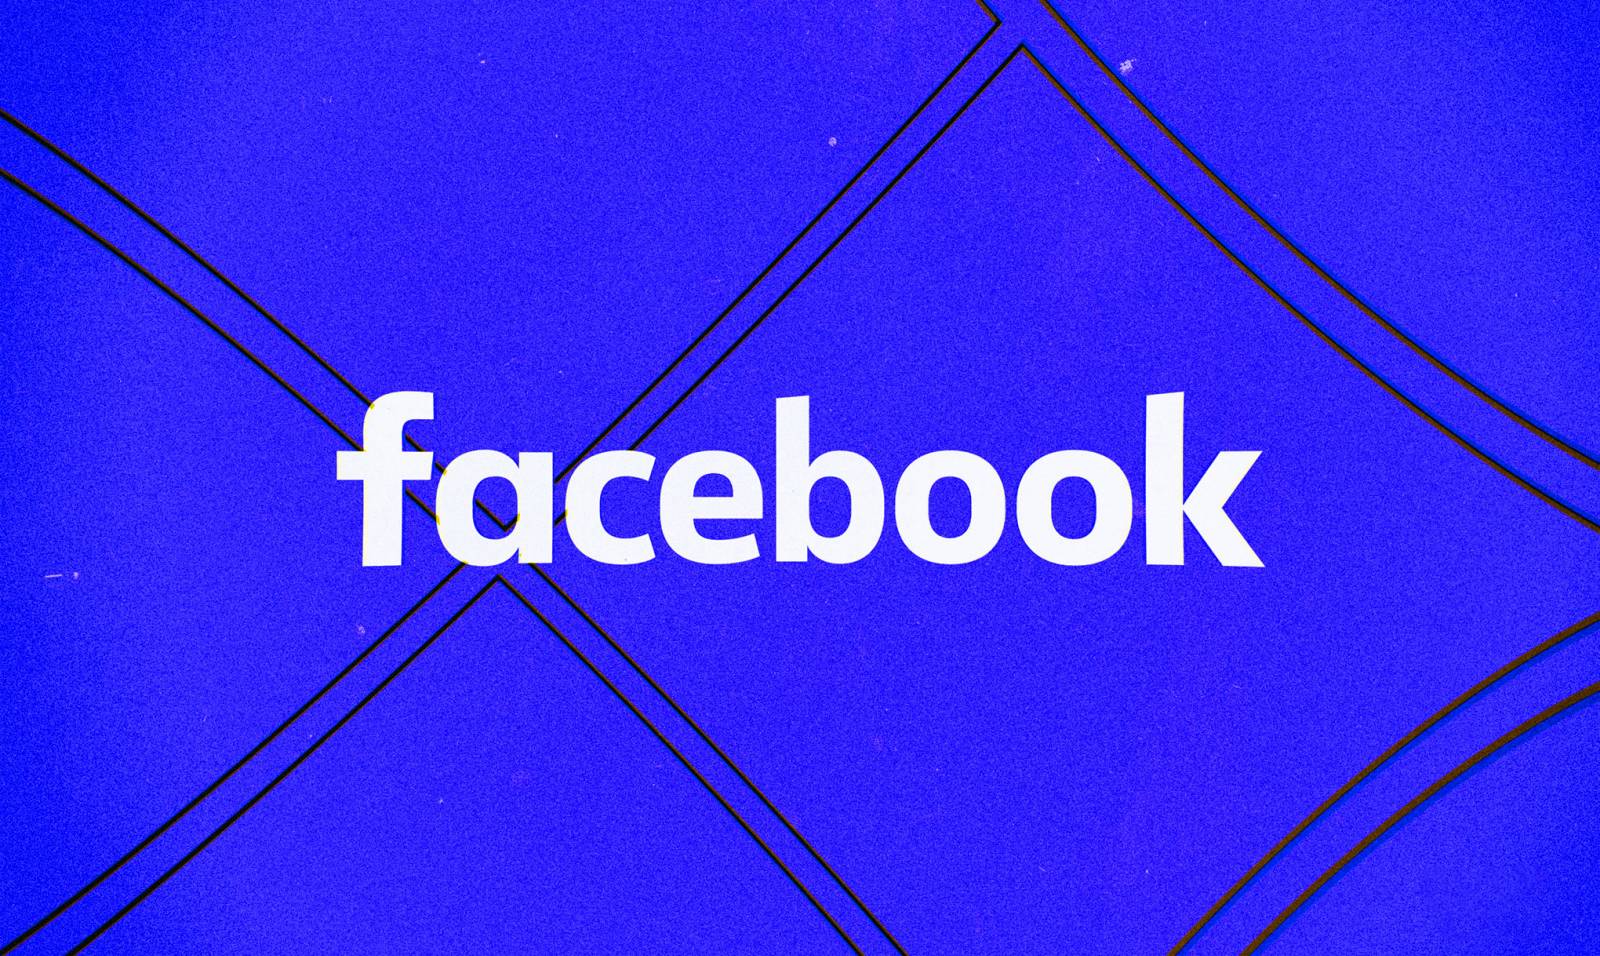 Facebook-uppdatering släppt för användare över hela världen